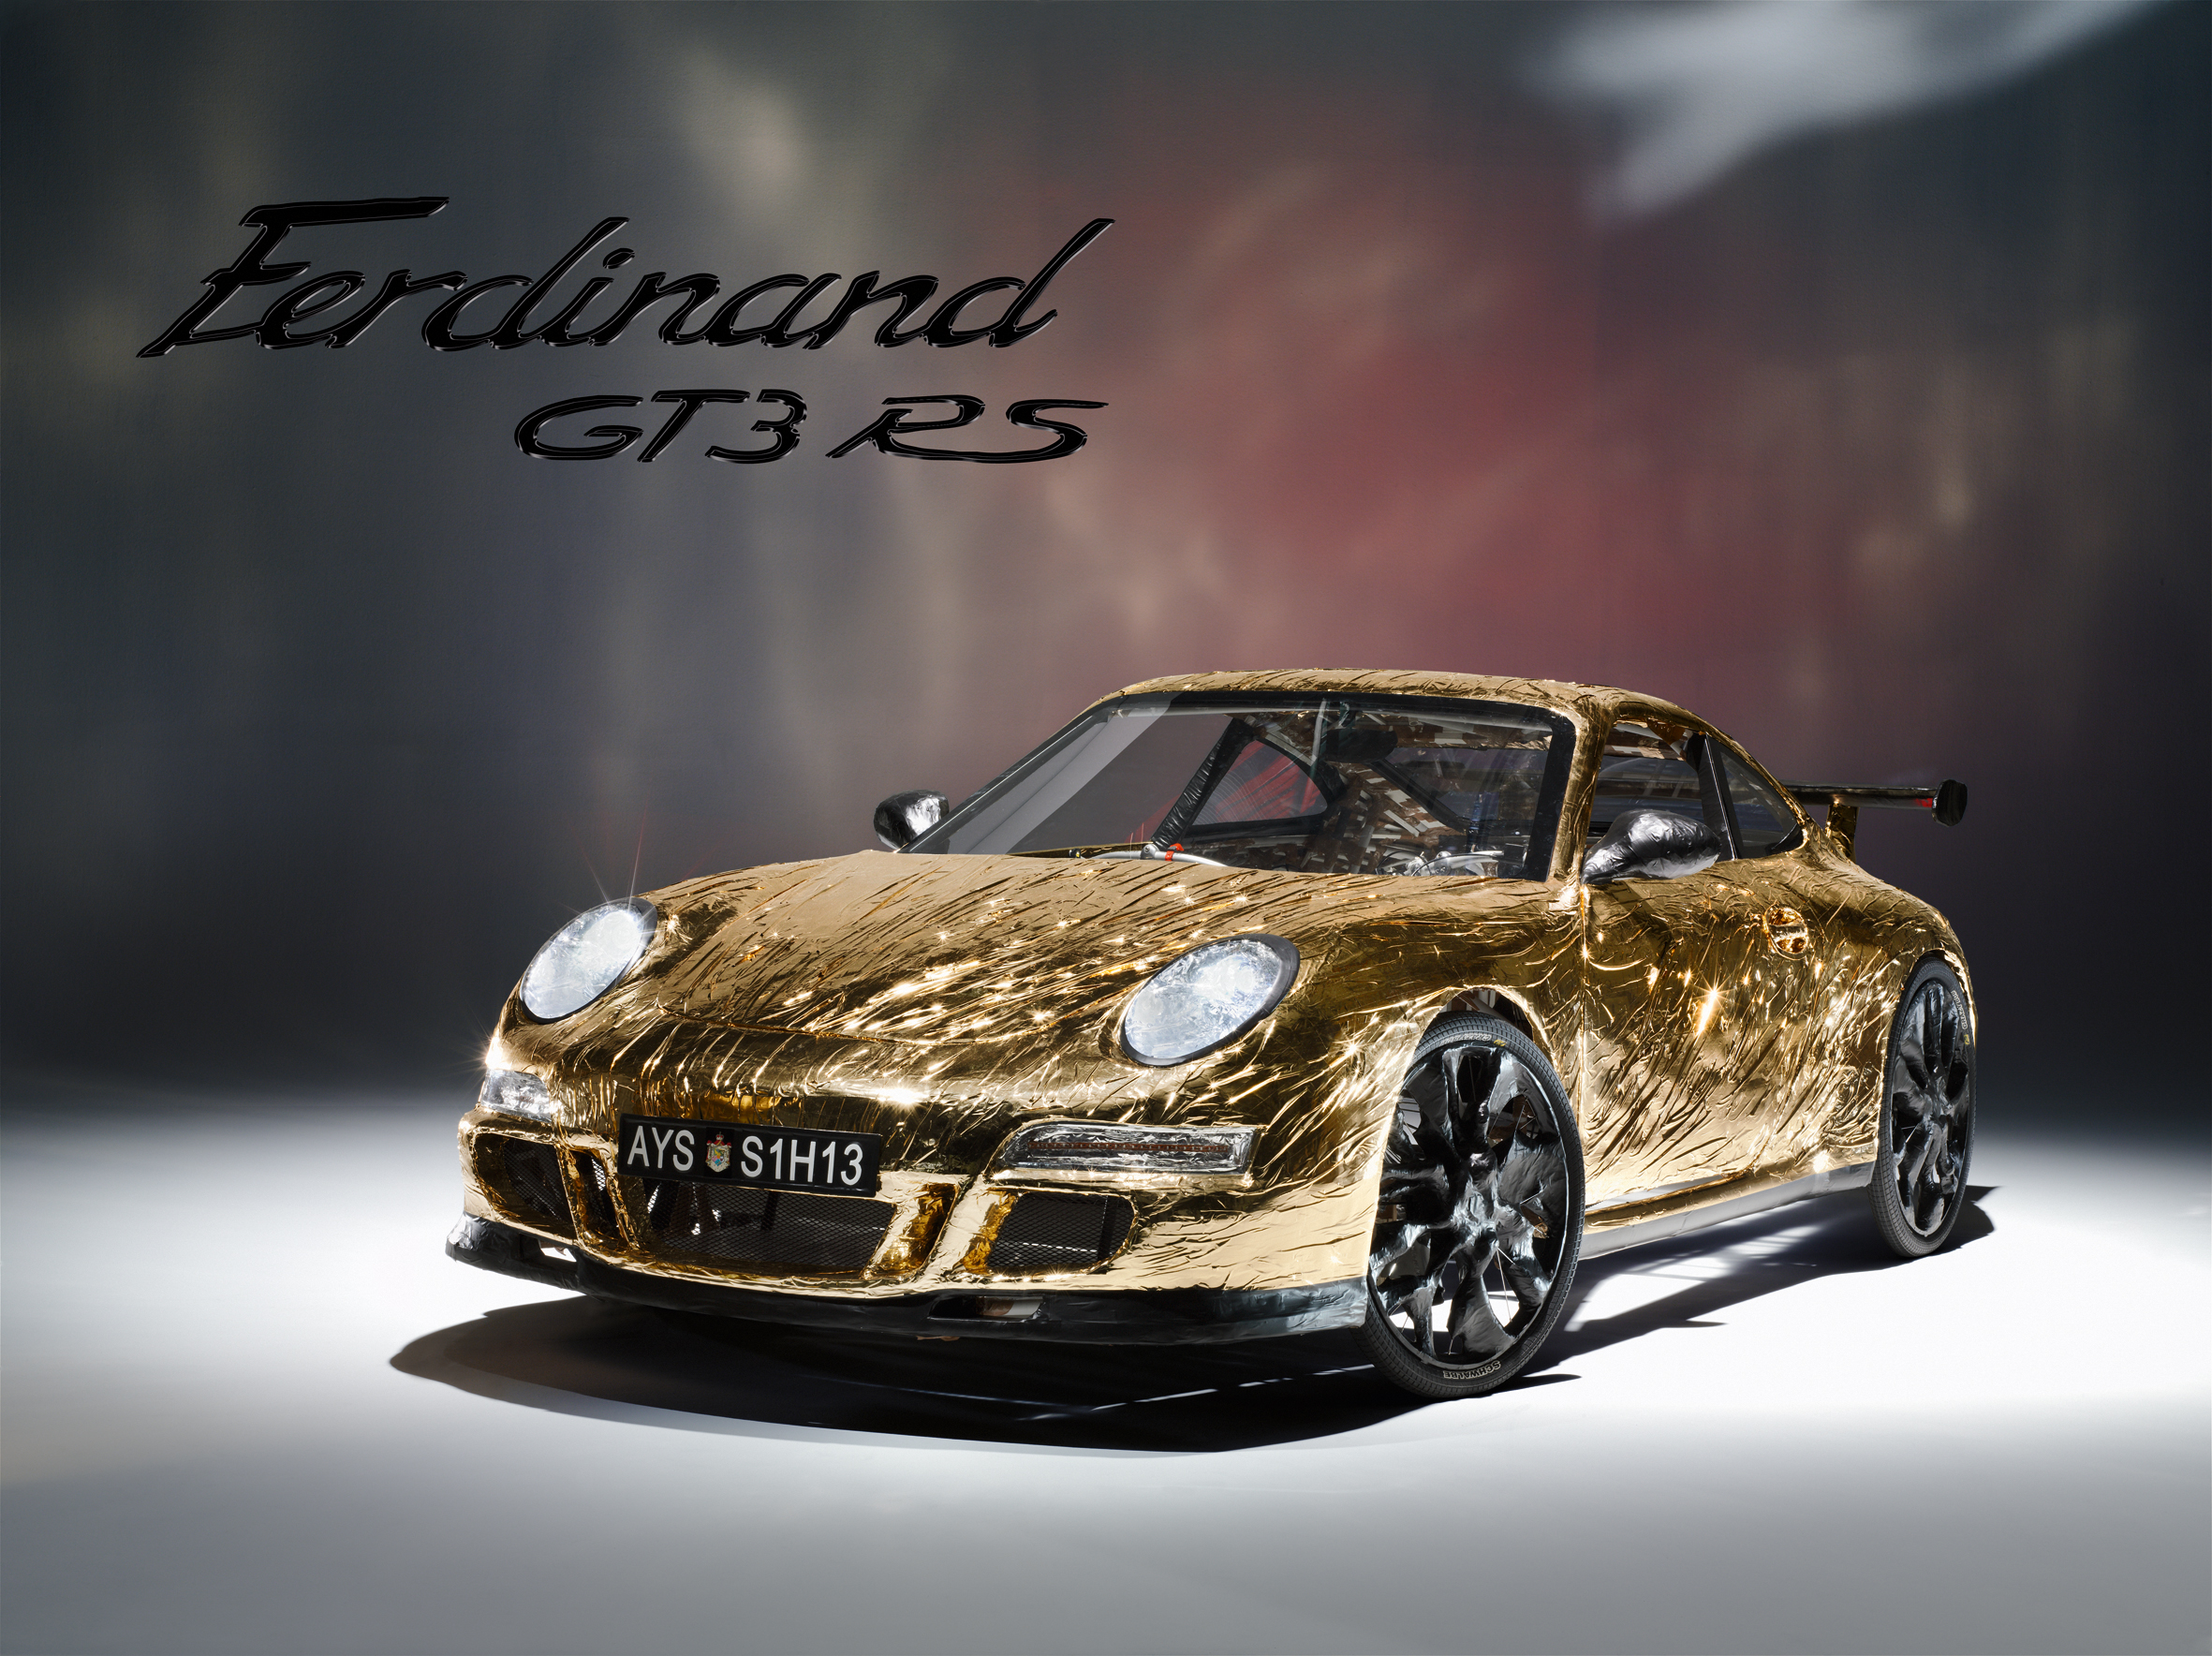 Ferdinand Gt3 Rs | Top Gear Wiki | Fandom